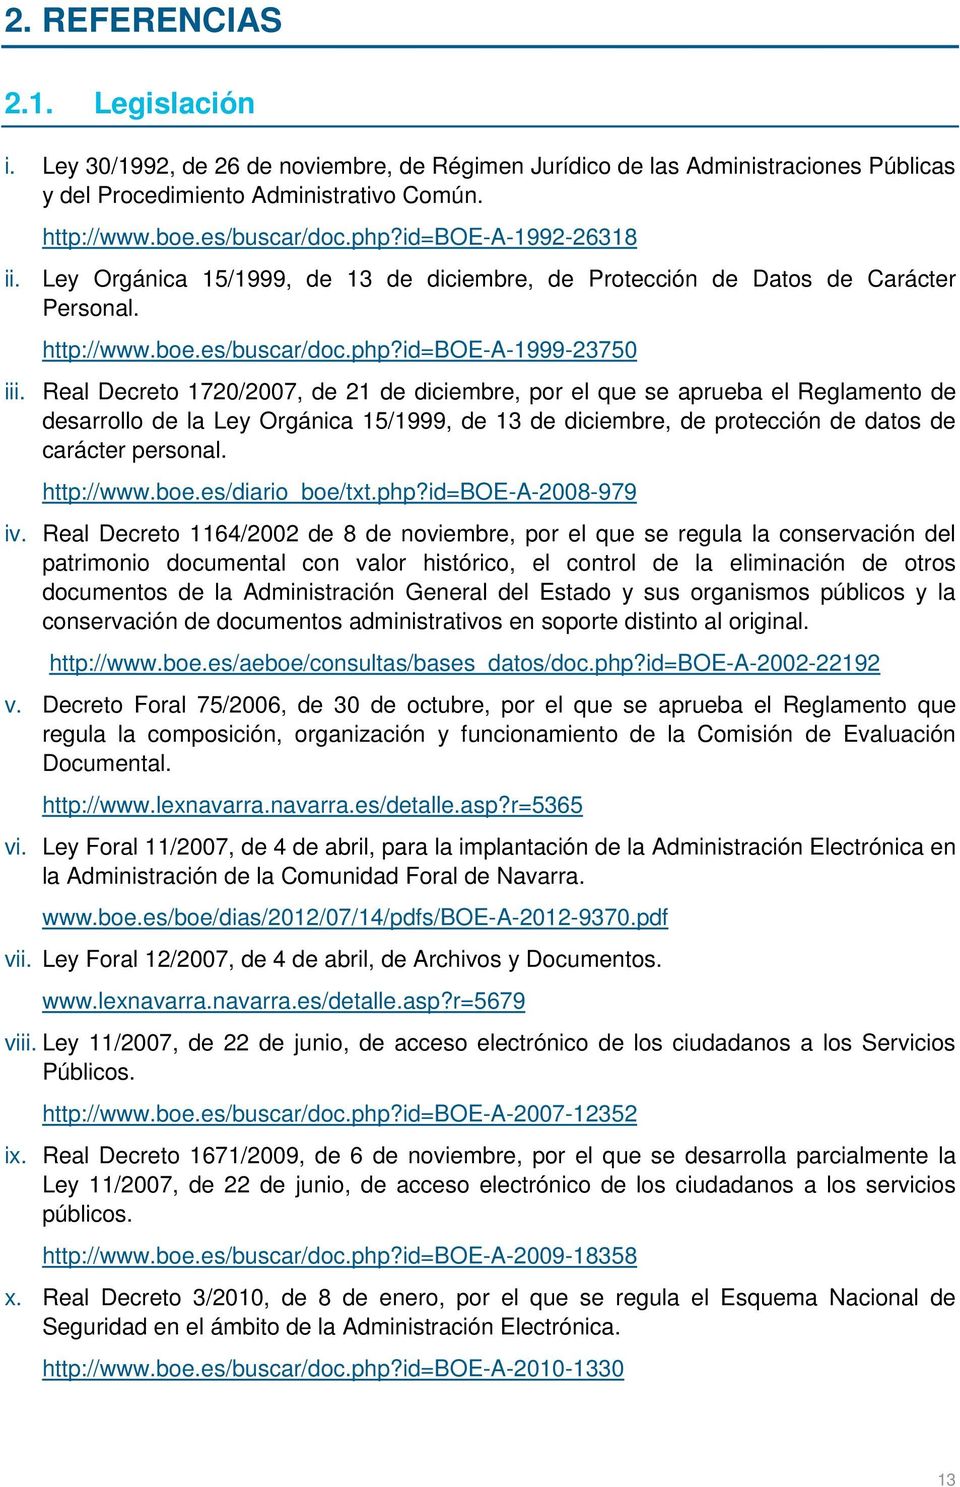 Real Decreto 1720/2007, de 21 de diciembre, por el que se aprueba el Reglamento de desarrollo de la Ley Orgánica 15/1999, de 13 de diciembre, de protección de datos de carácter personal. http://www.